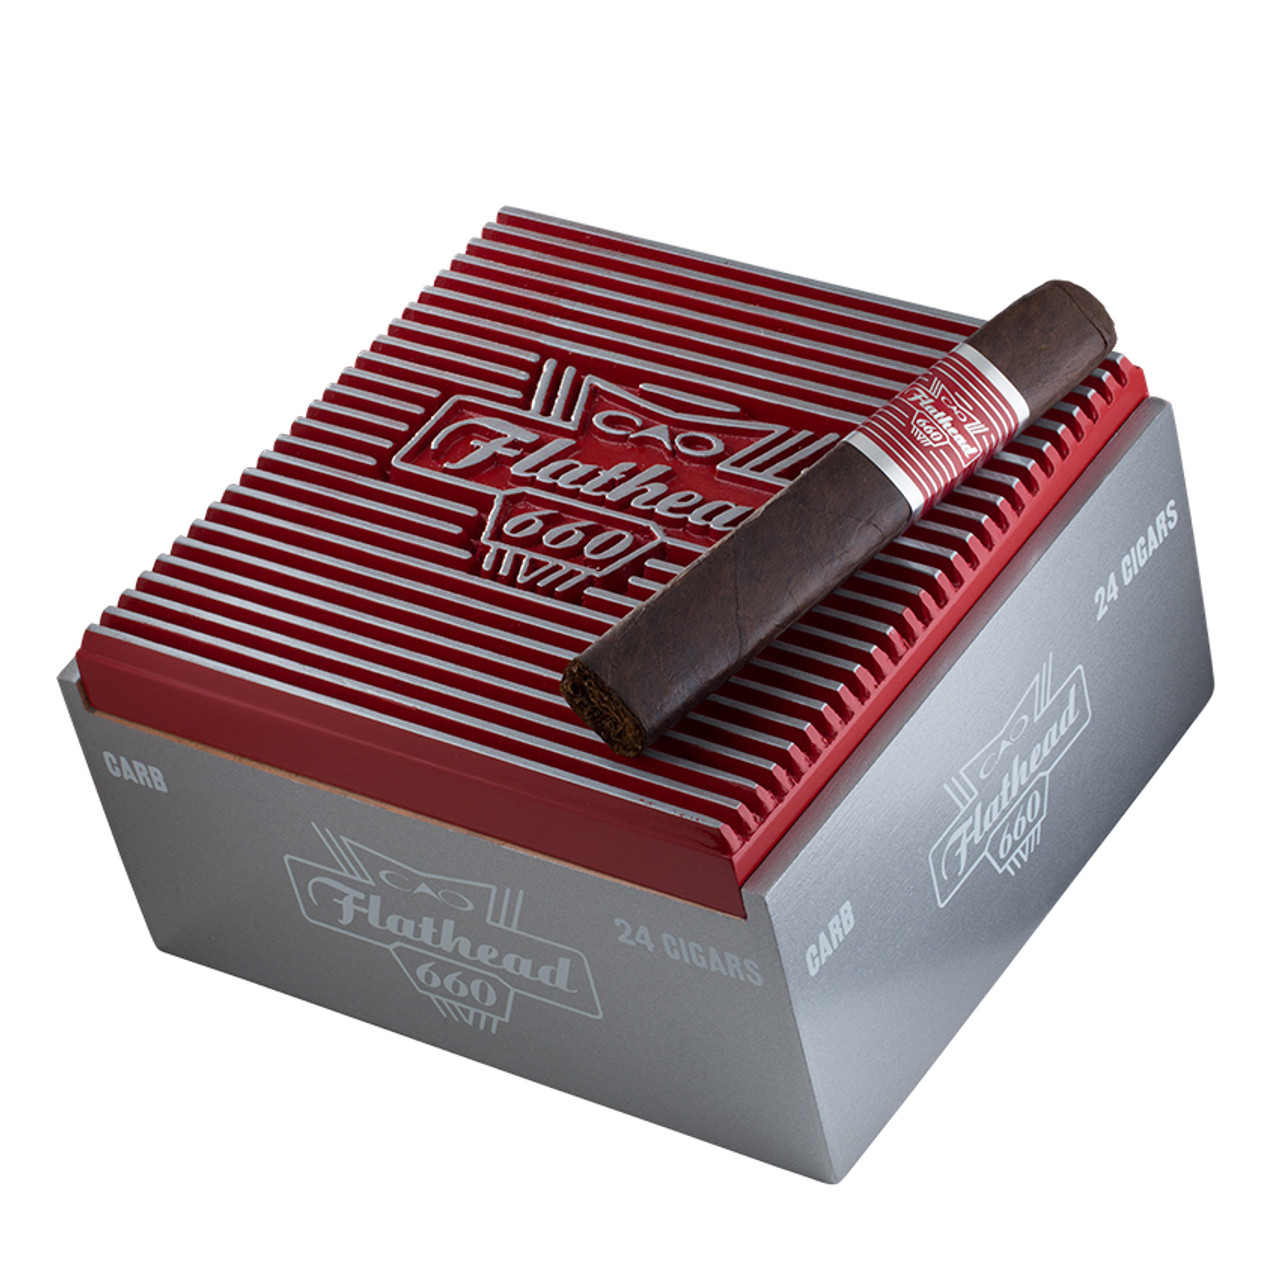 CAO Flathead V660 Carb Cigars - 6 x 60 (Box of 24) *Box